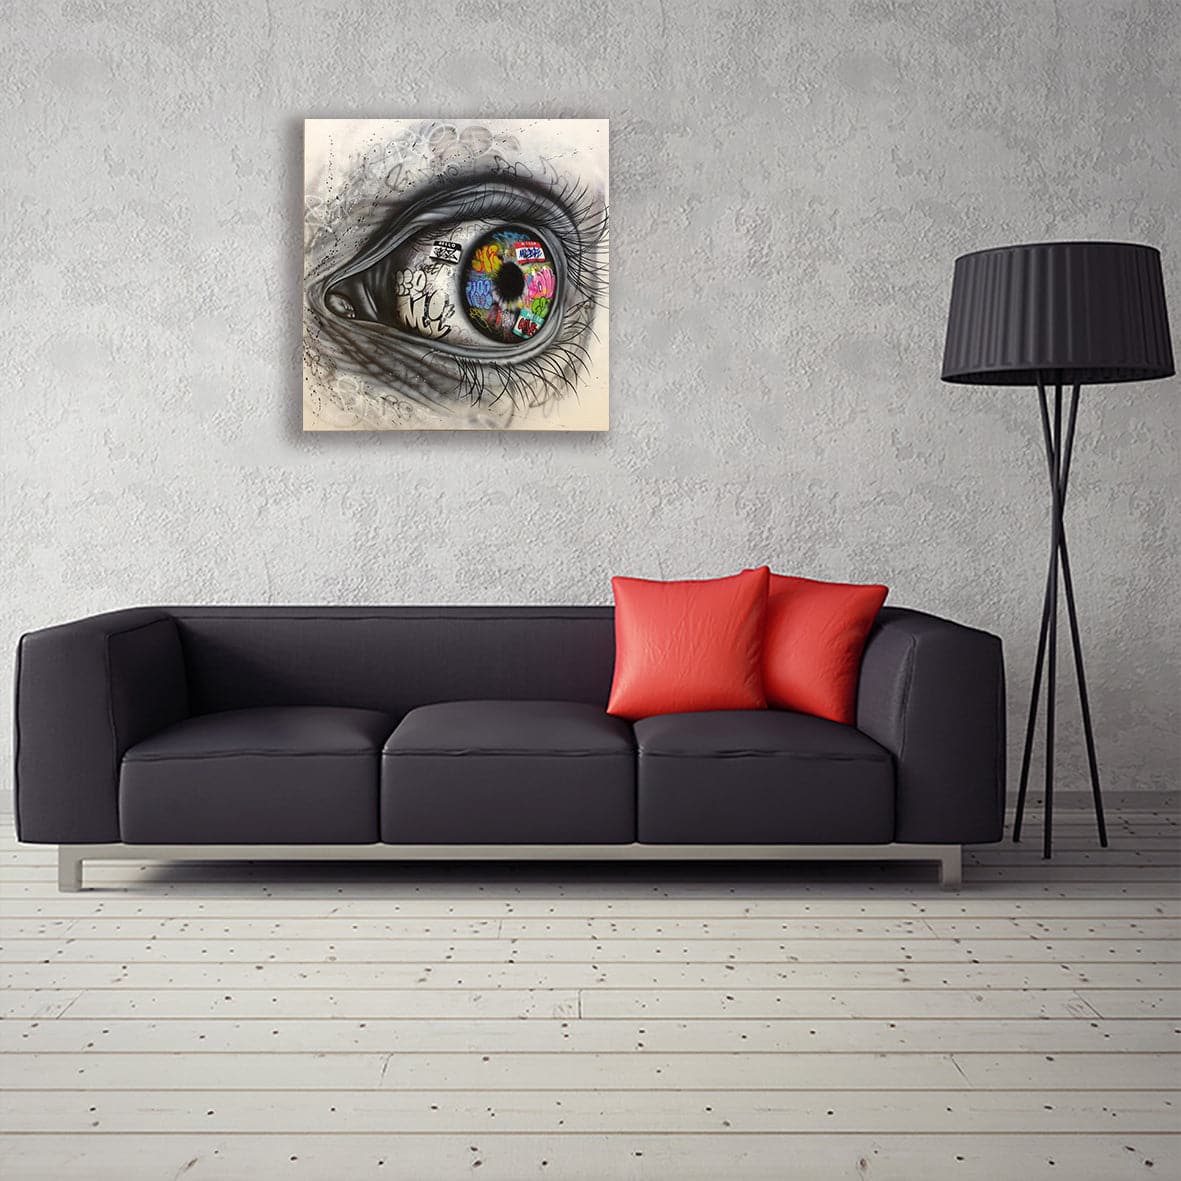 Framed 1 Panel - The Eye